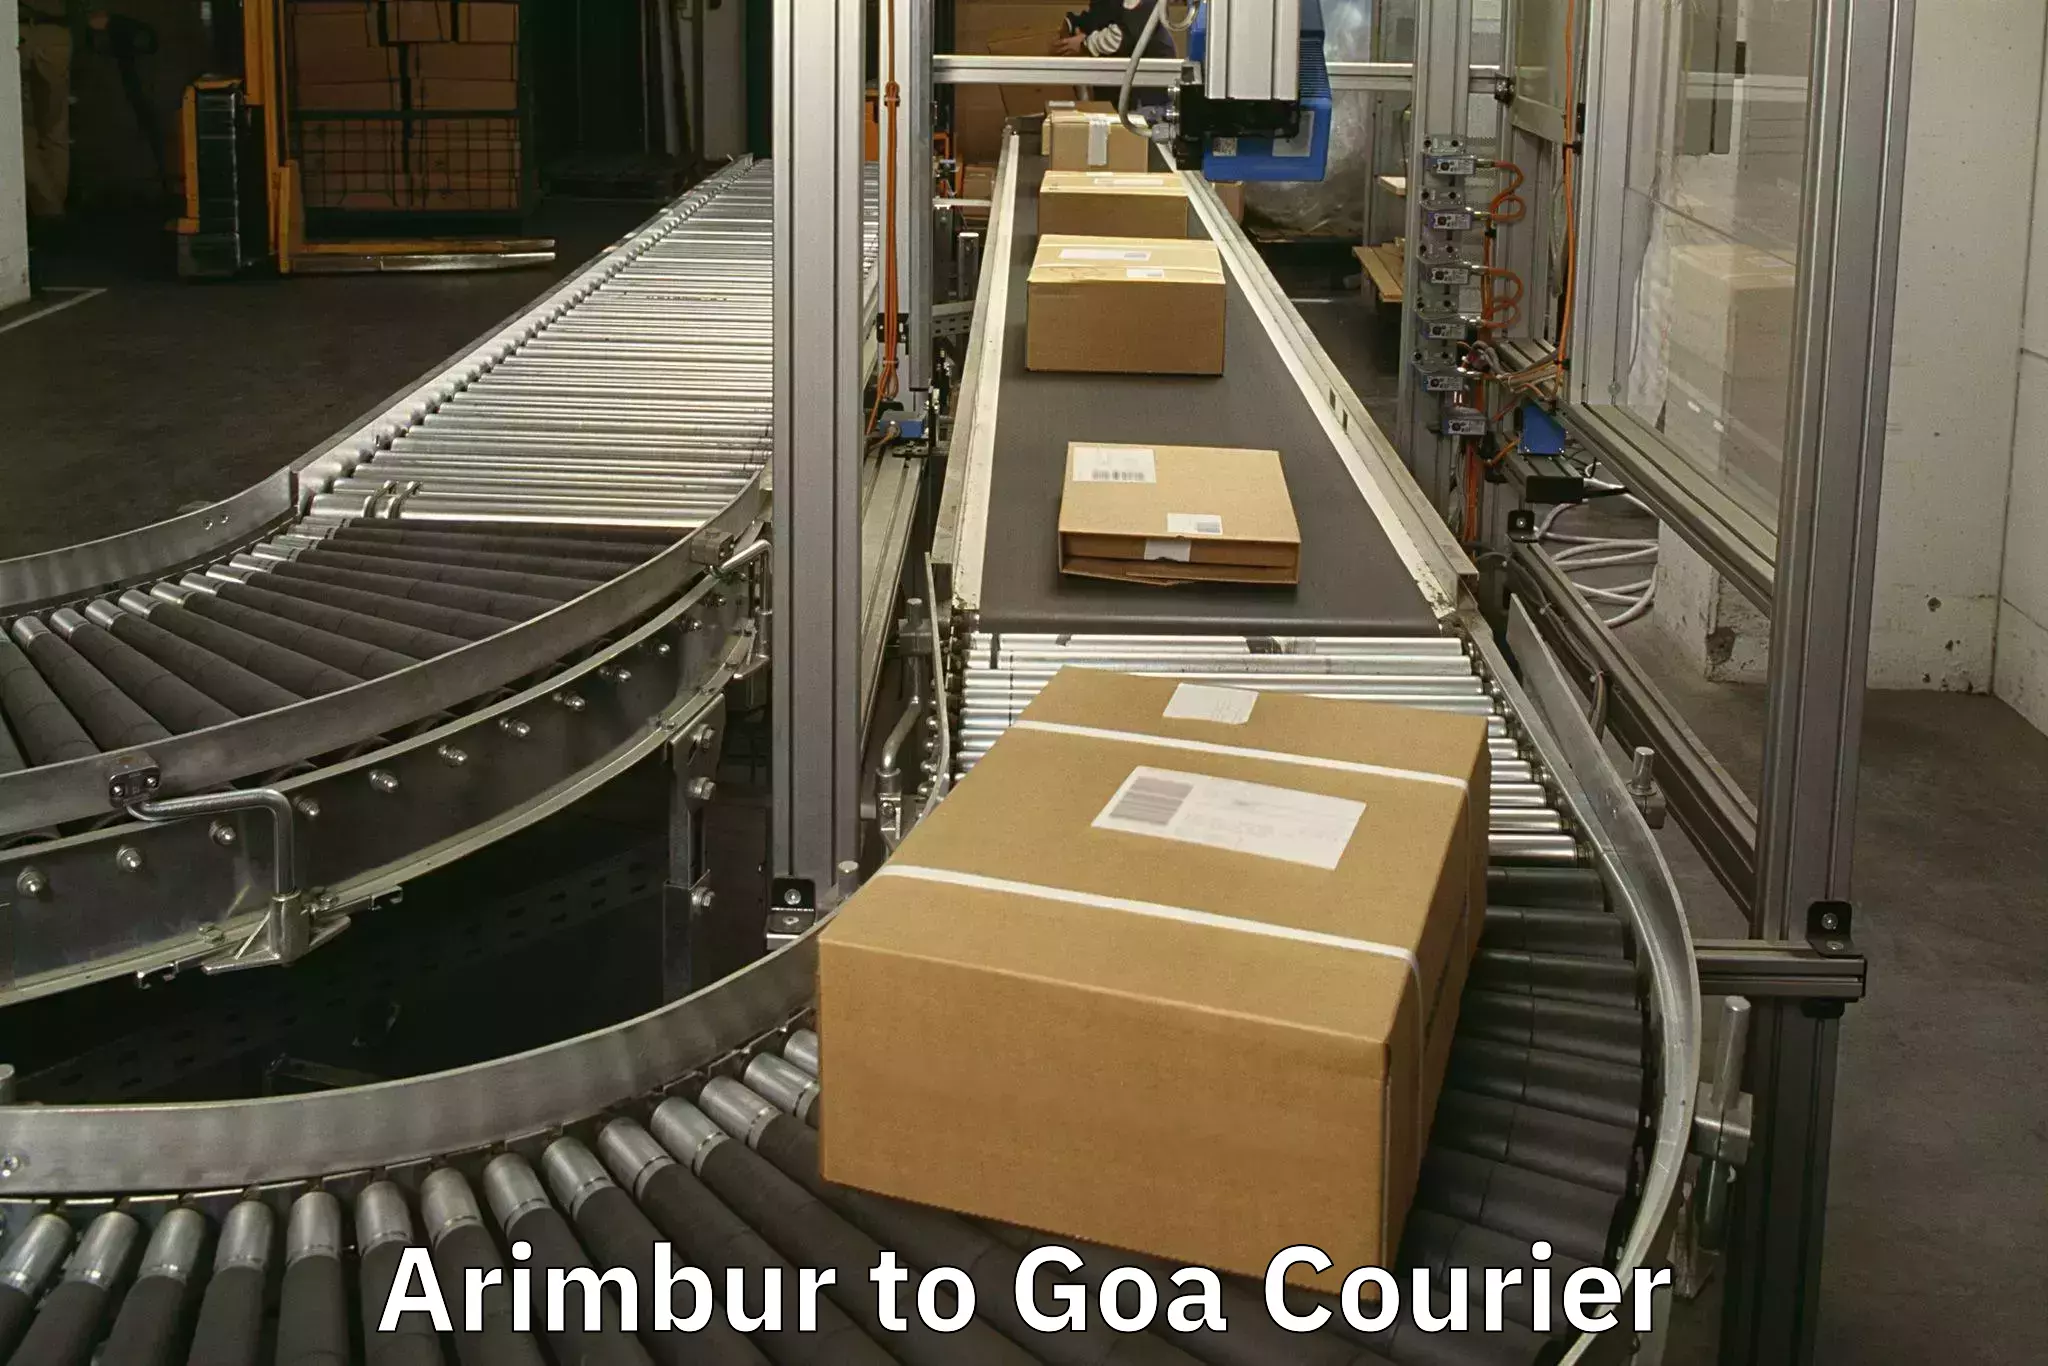 Luggage shipment tracking Arimbur to Goa